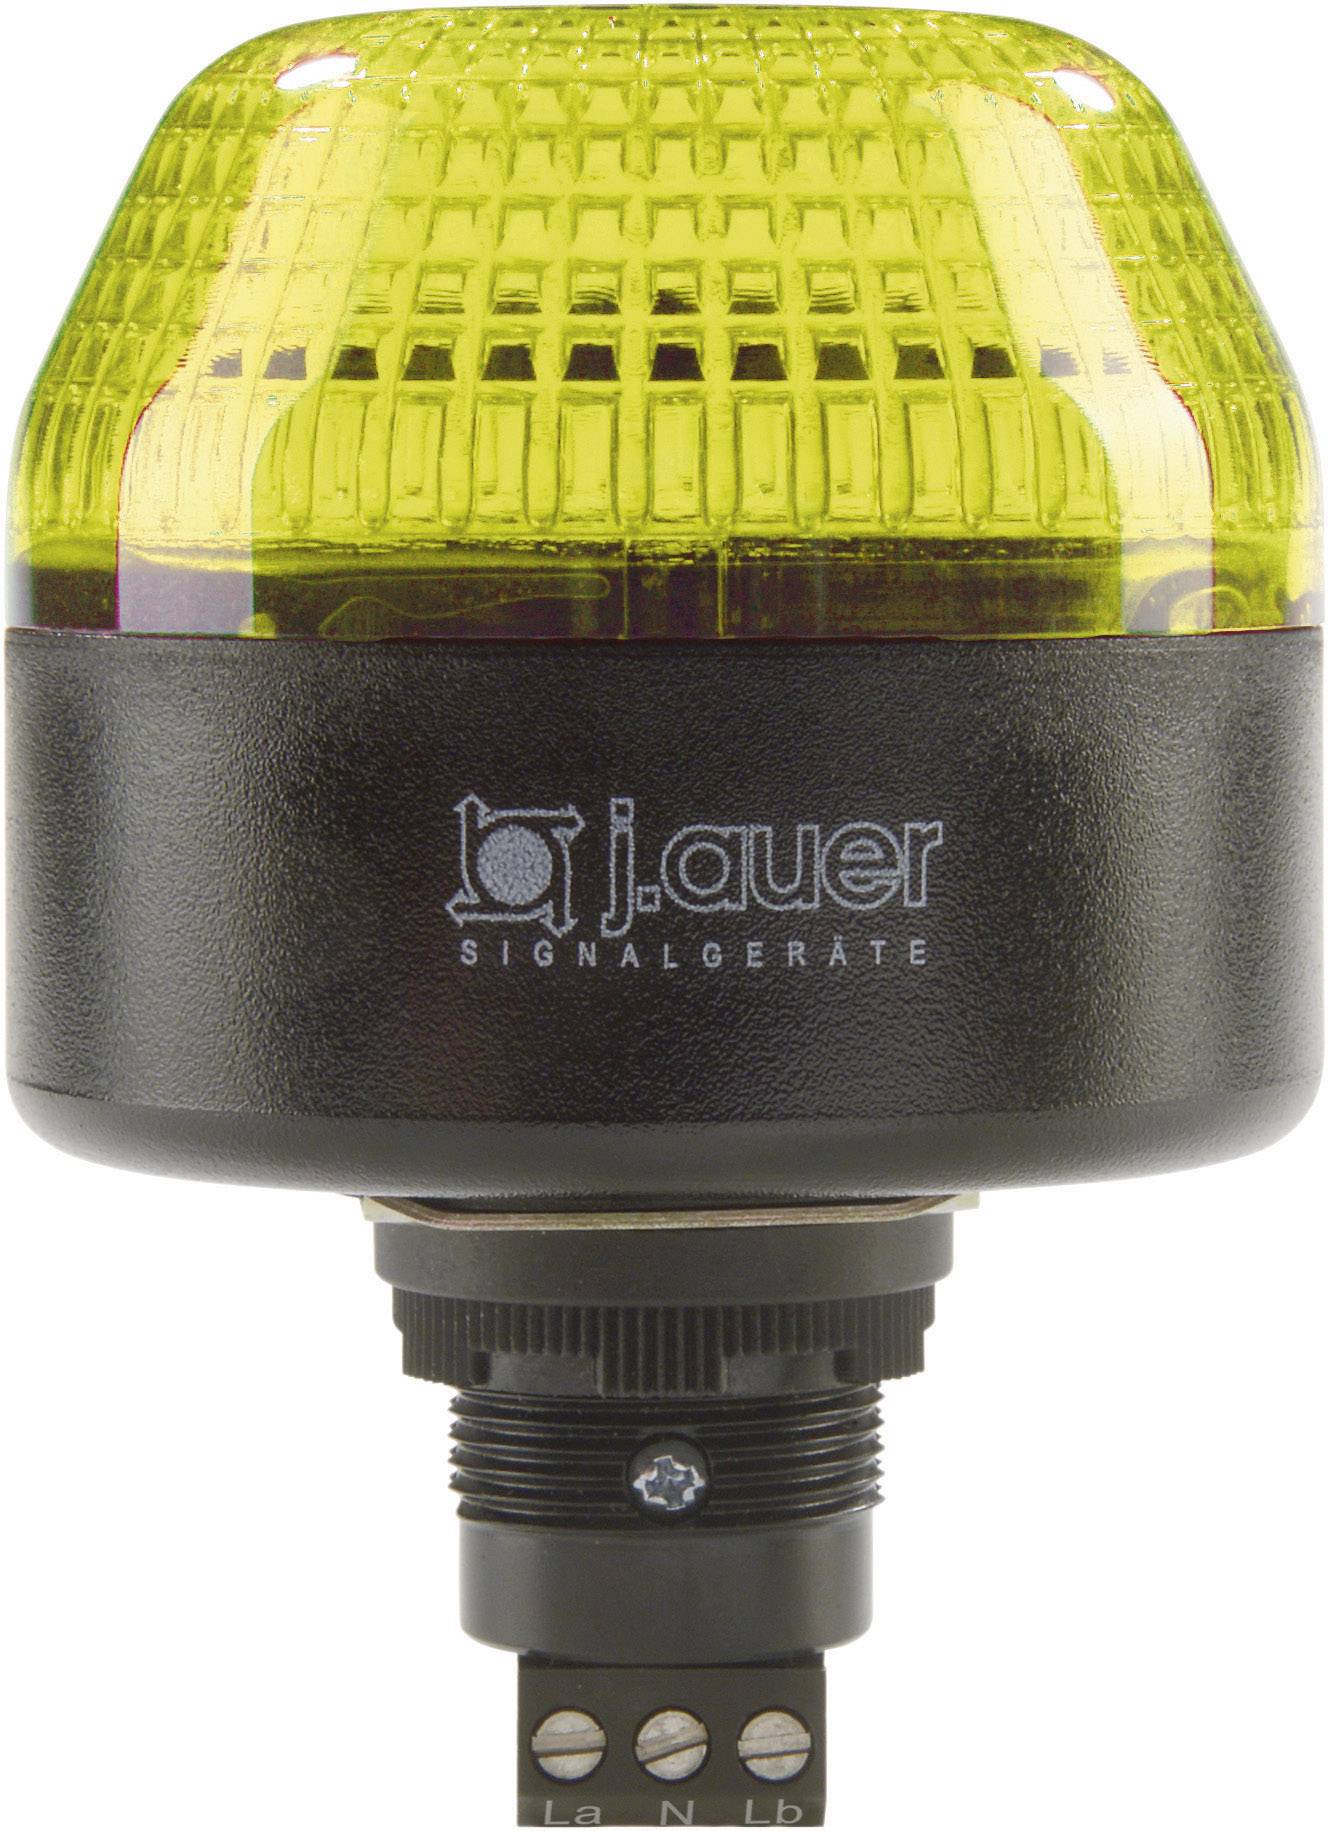 AUER SIGNAL Signalleuchte LED Auer Signalgeräte IBL Gelb Dauerlicht, Blinklicht 24 V/DC, 24 V/AC